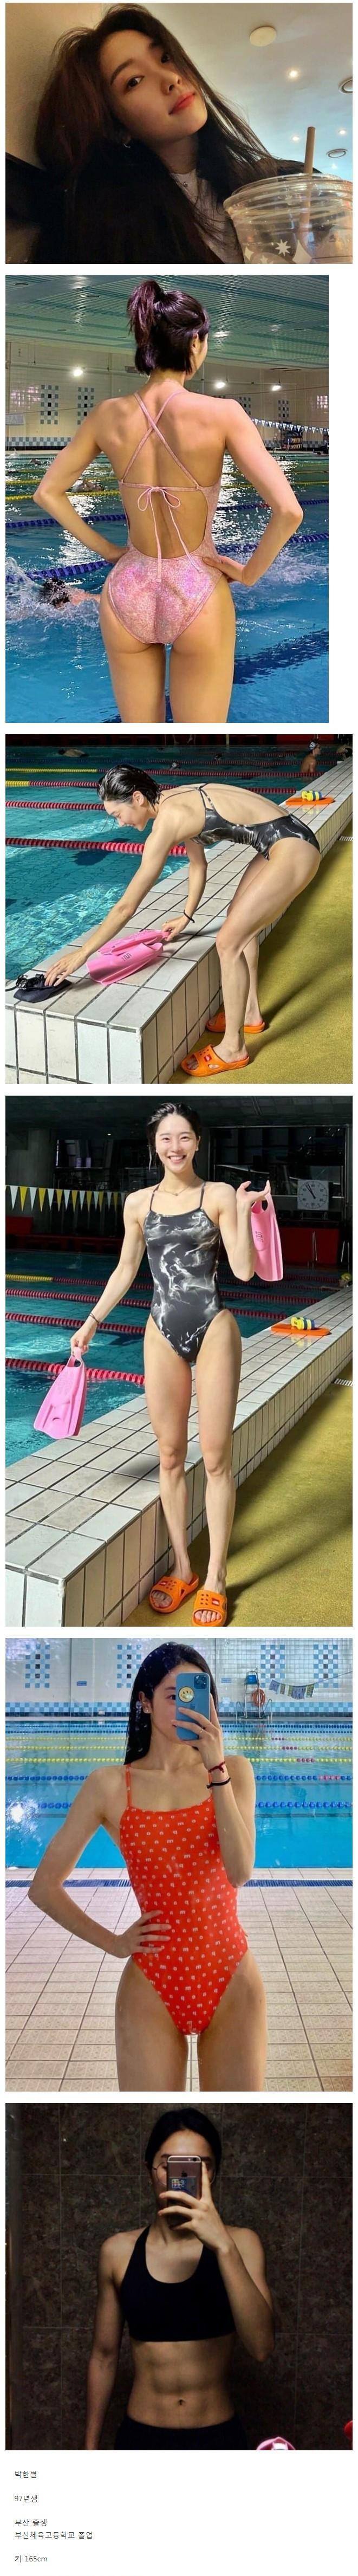    생각보다 덜 알려진 이쁜 여자 수영선수